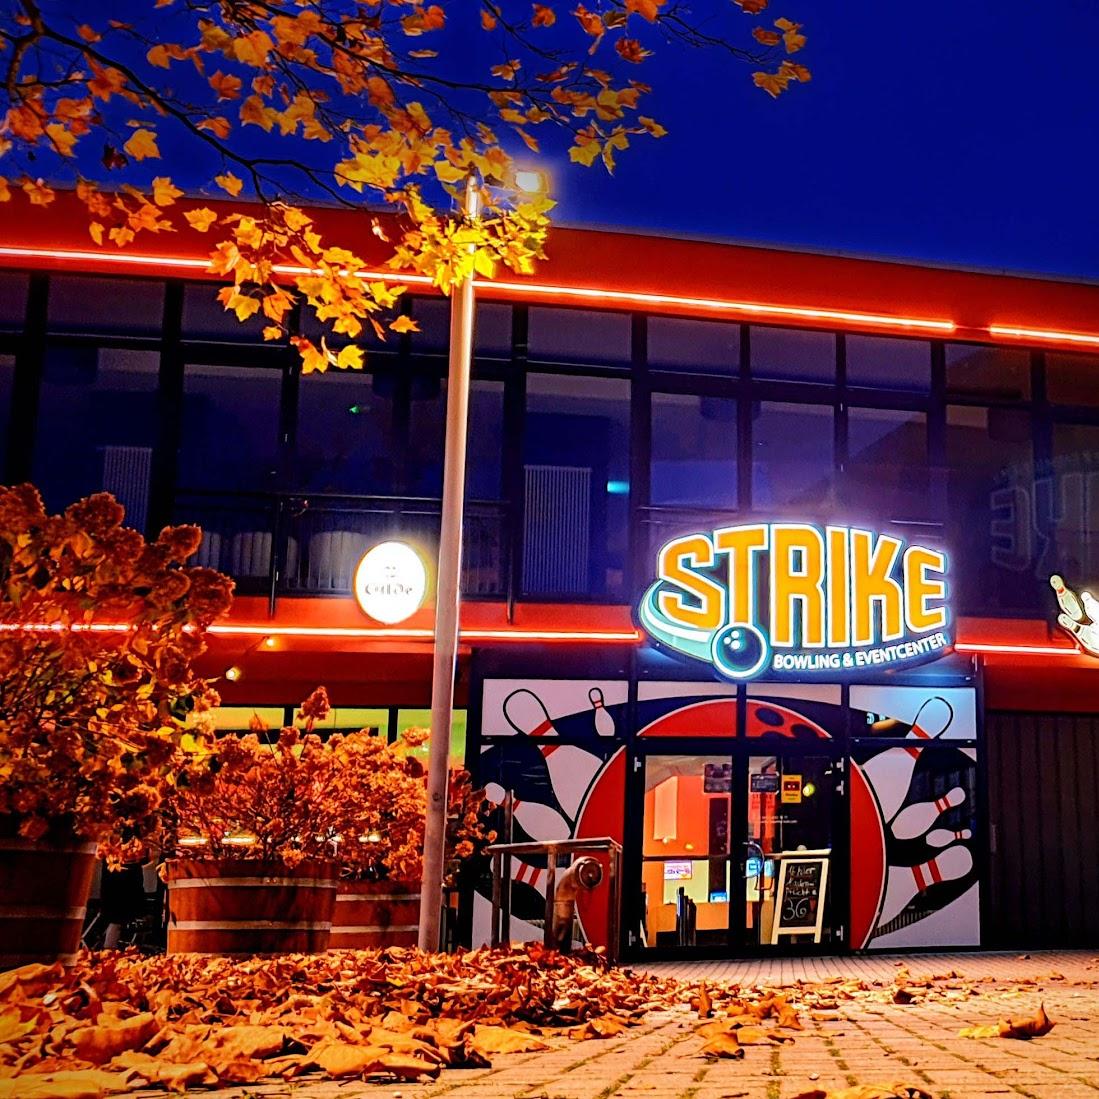 Restaurant "Strike-Bowling u. Eventcenter" in Wolfsburg